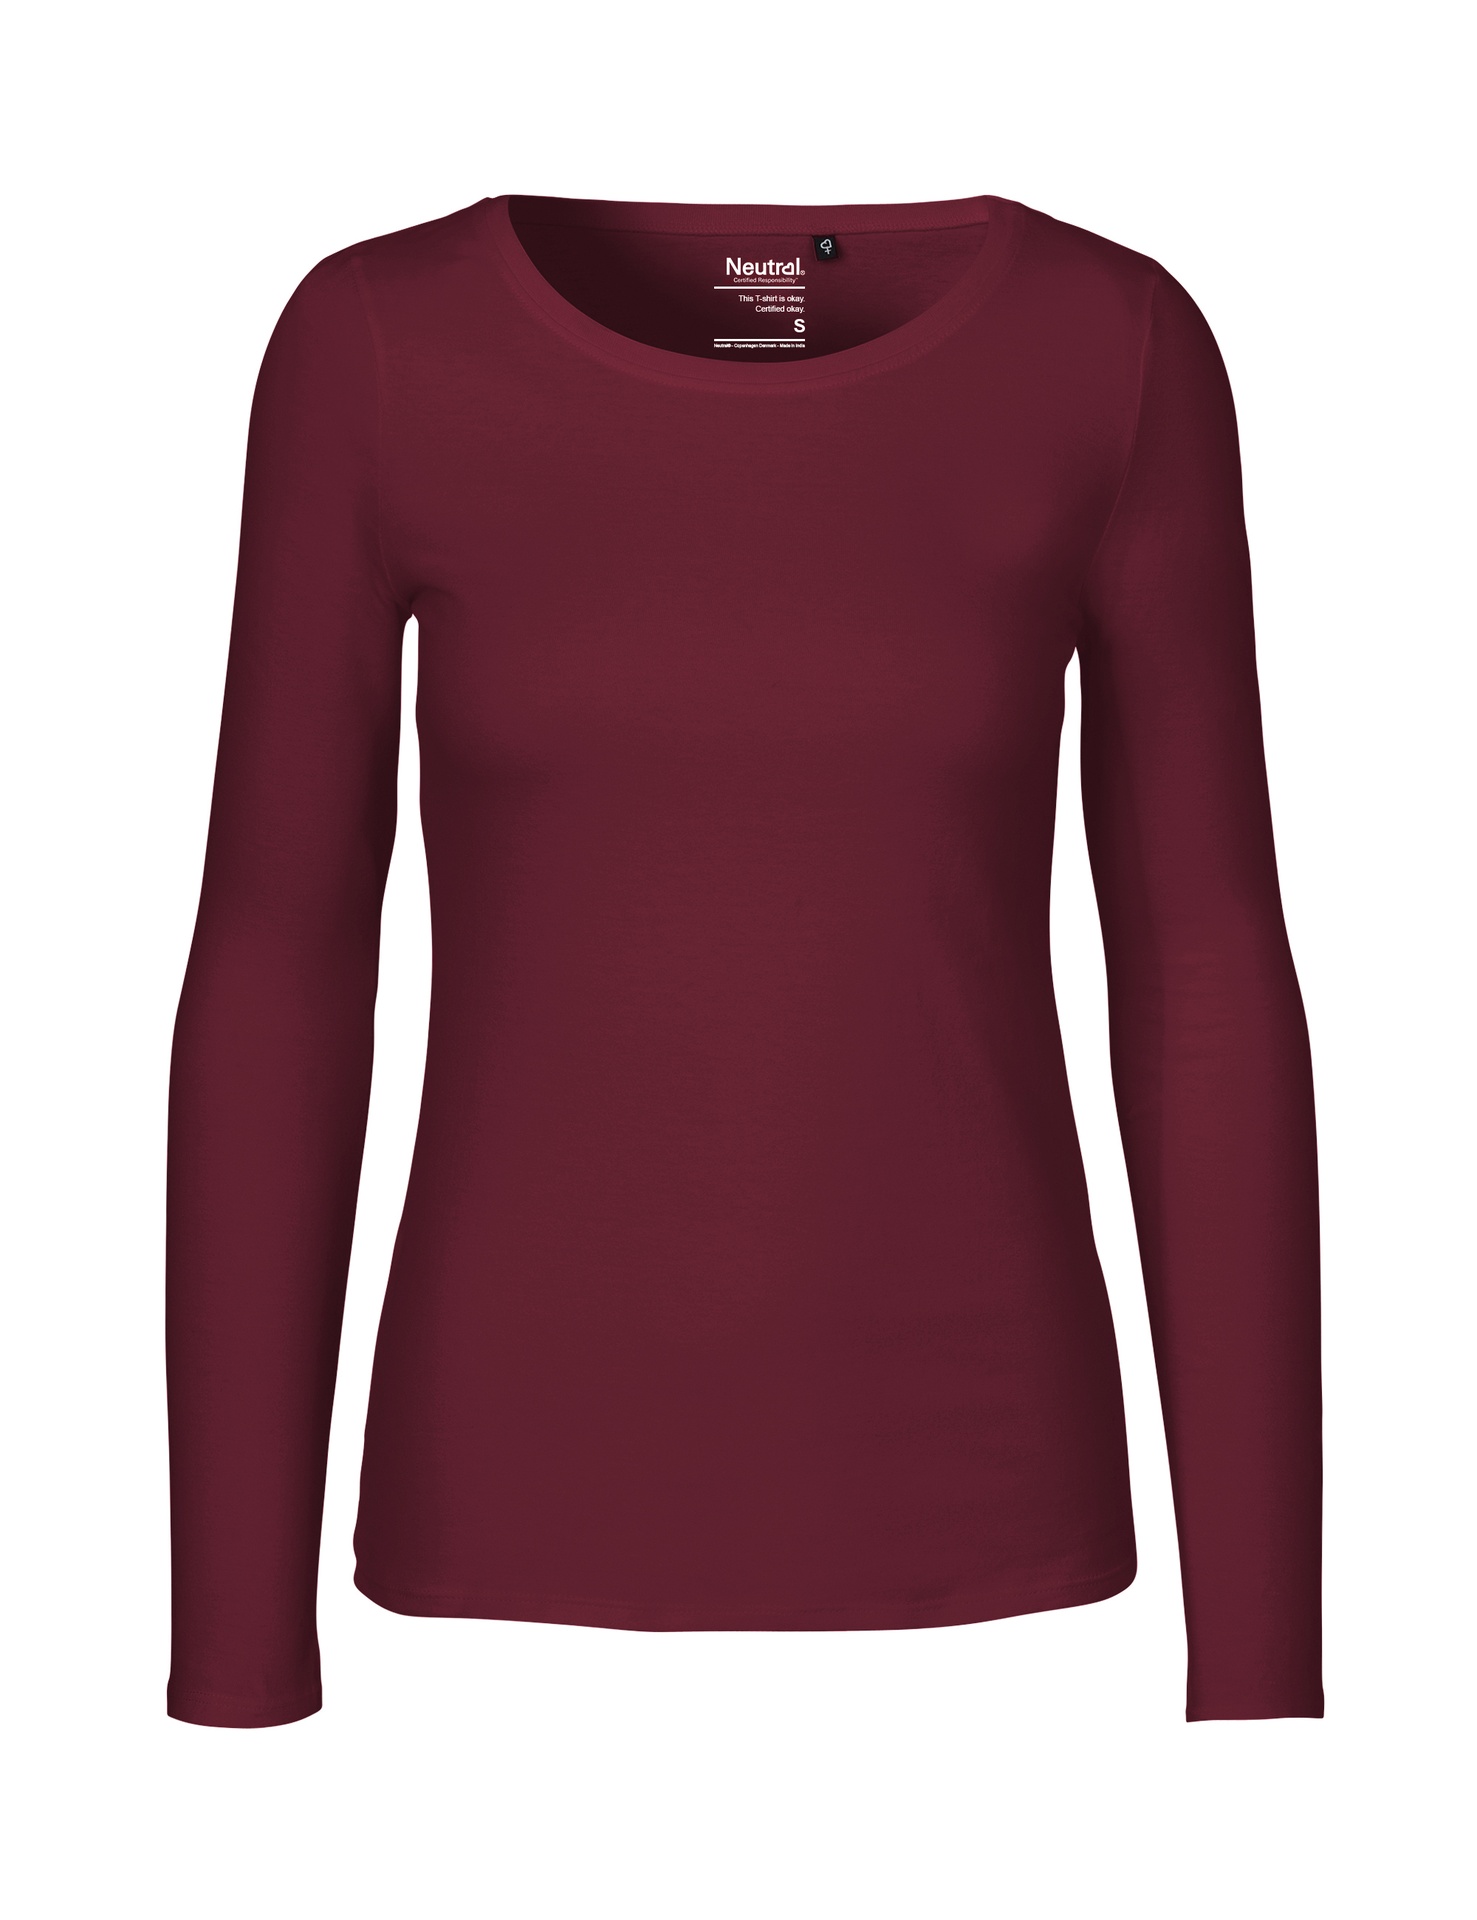 [PR/04707] Ladies Long Sleeve T-Shirt (Bordeaux 26, M)